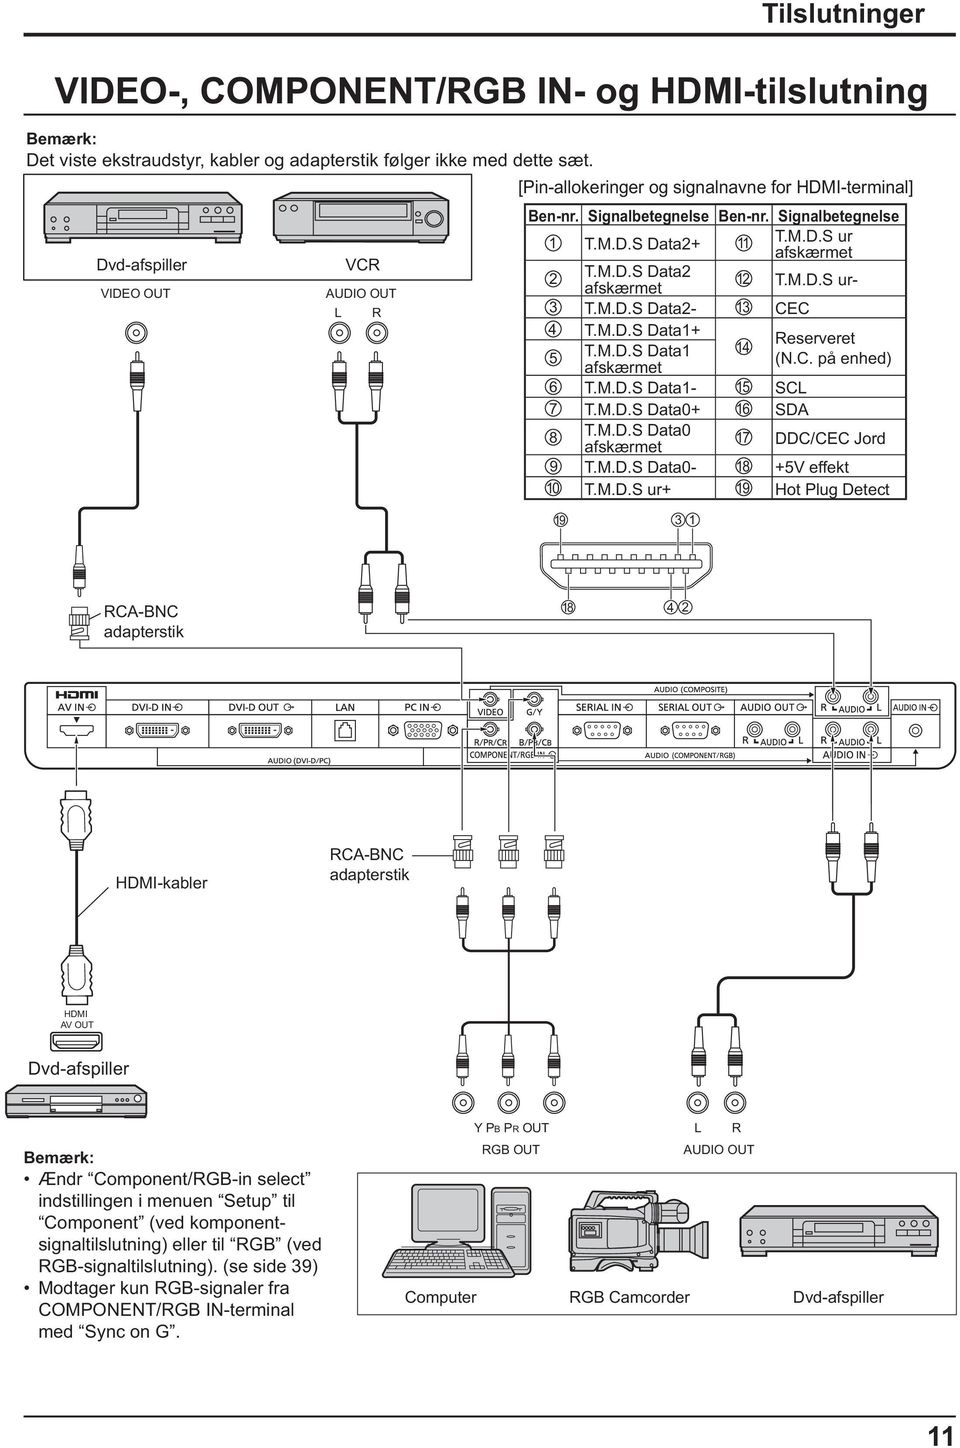 M.D.S Data0 afskærmet 17 DDC/CEC Jord 9 T.M.D.S Data0-18 +5V effekt 10 T.M.D.S ur+ 19 Hot Plug Detect 19 3 1 Tilslutninger VIDEO-, COMPONENT/RGB IN- og HDMI-tilslutning RCA-BNC adapterstik 18 4 2